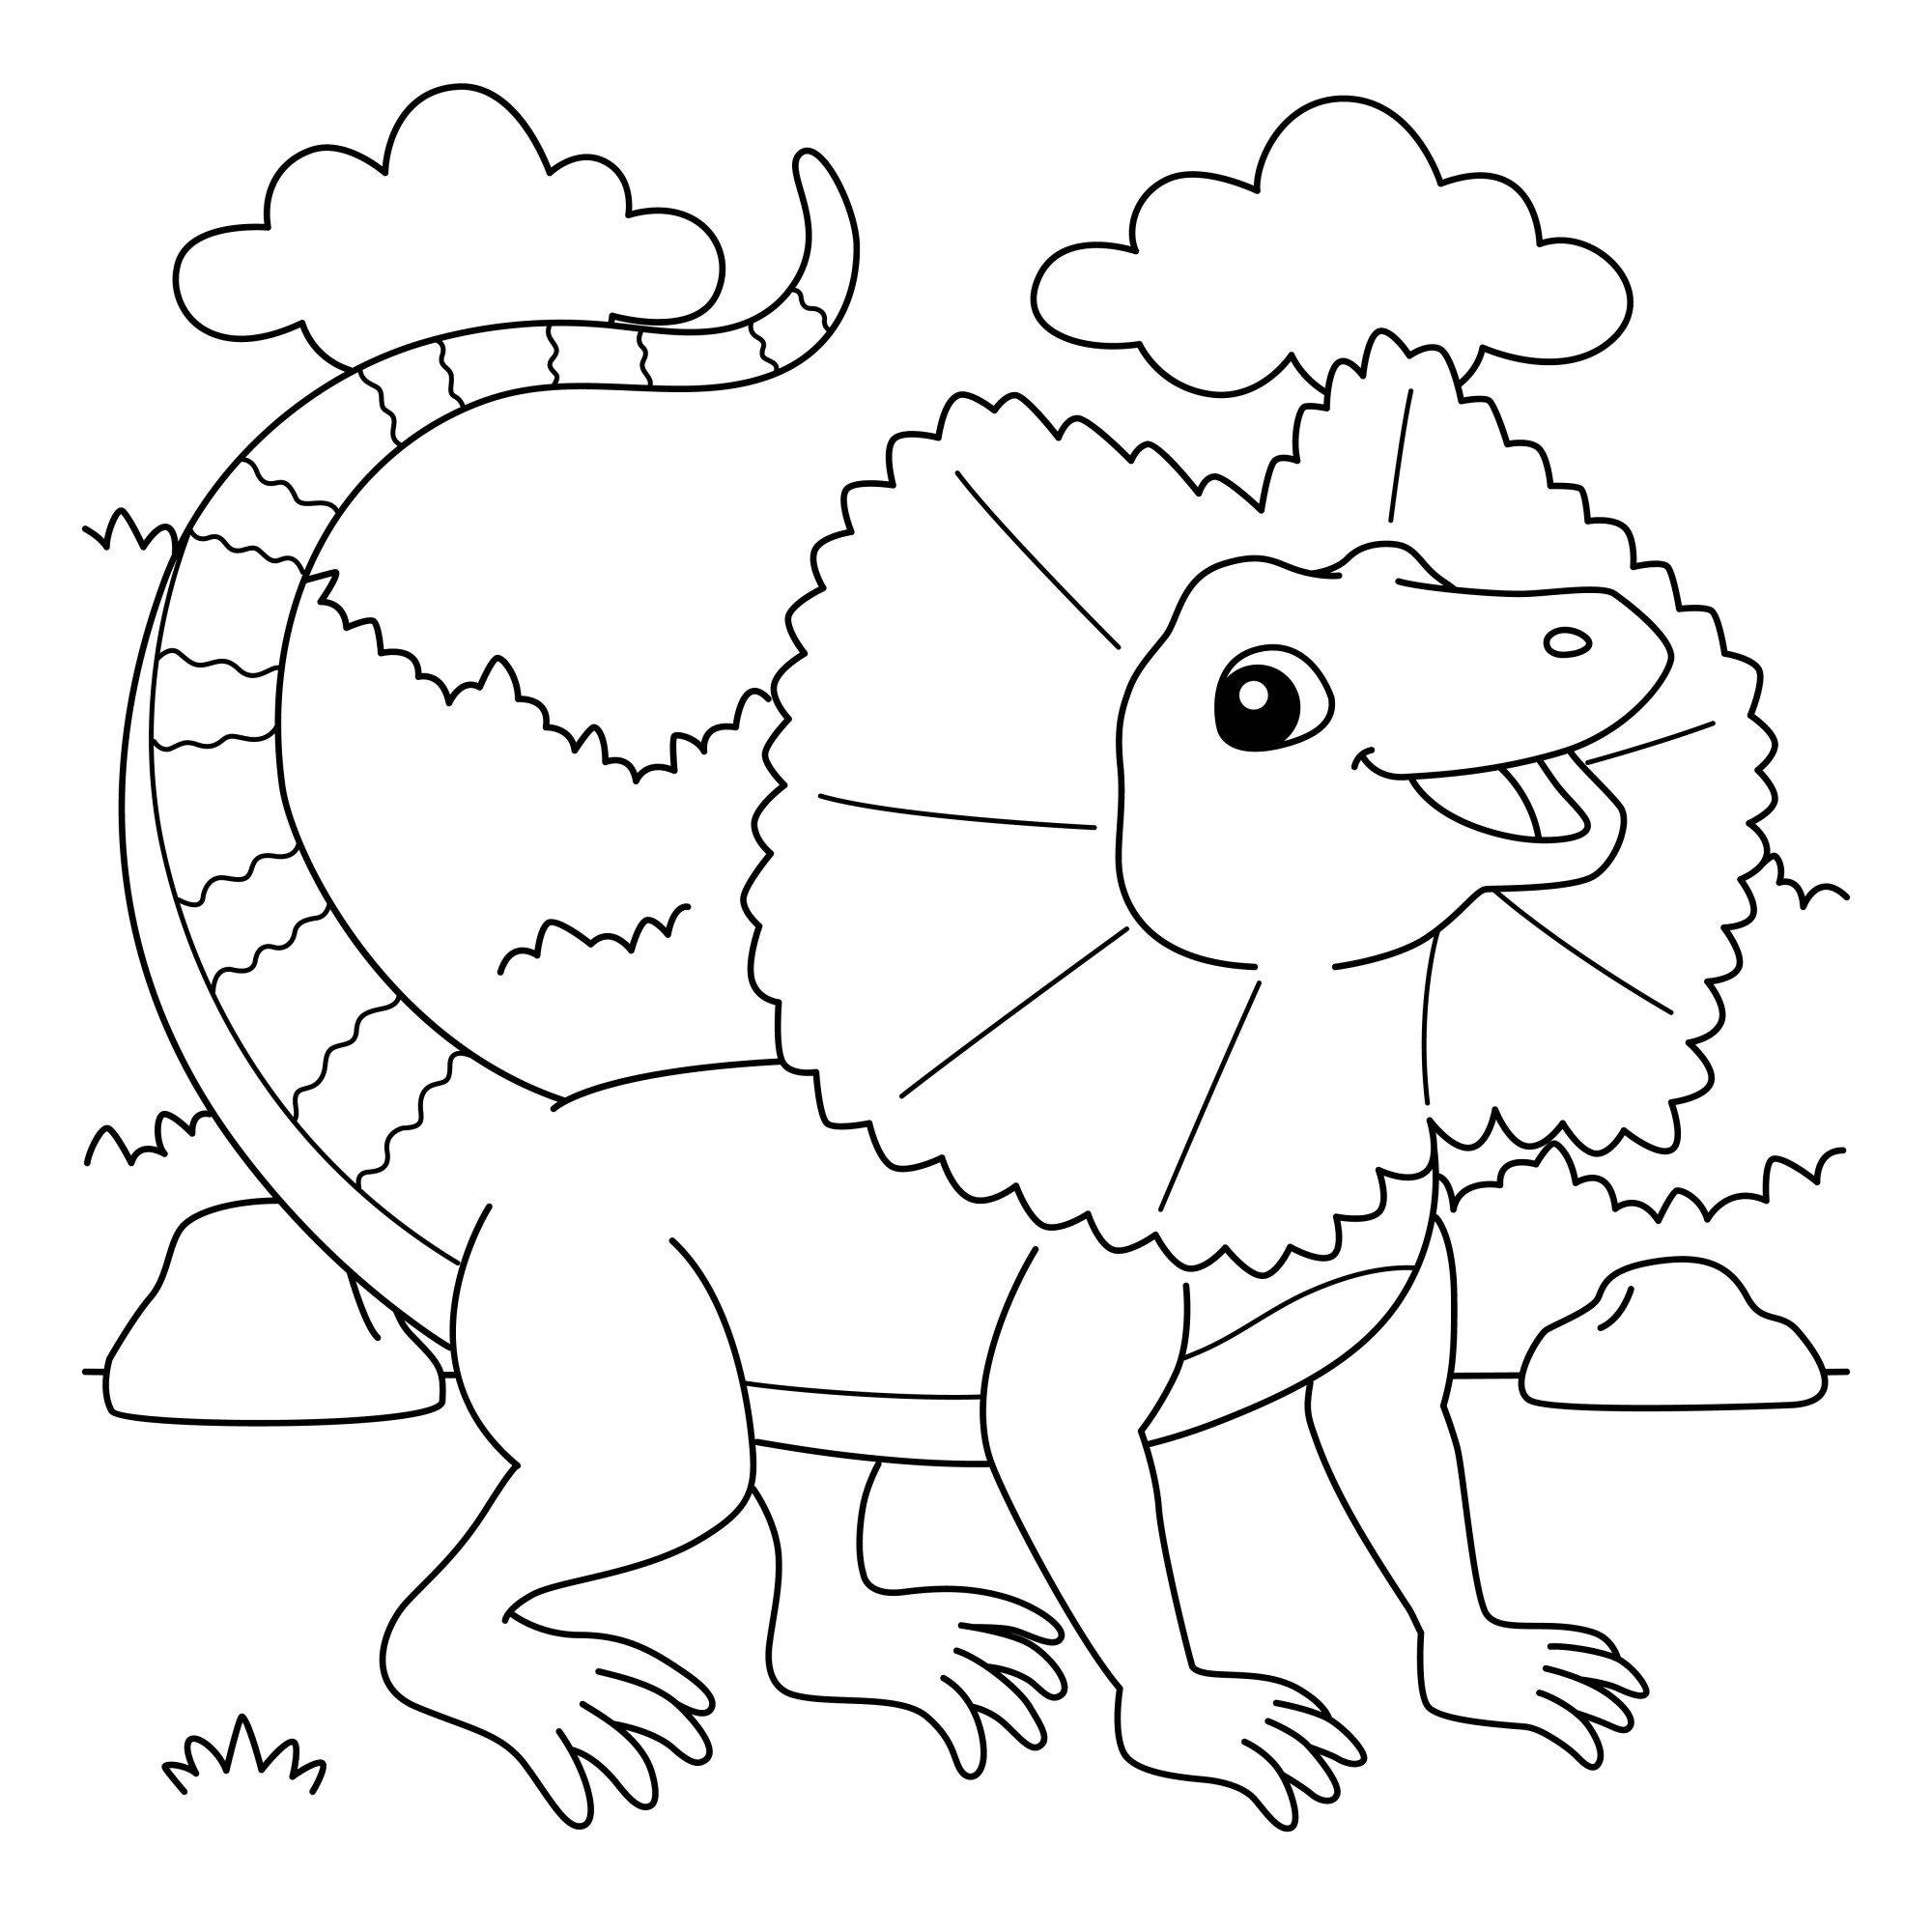 Раскраска для детей: динозавр ящерица на фоне неба